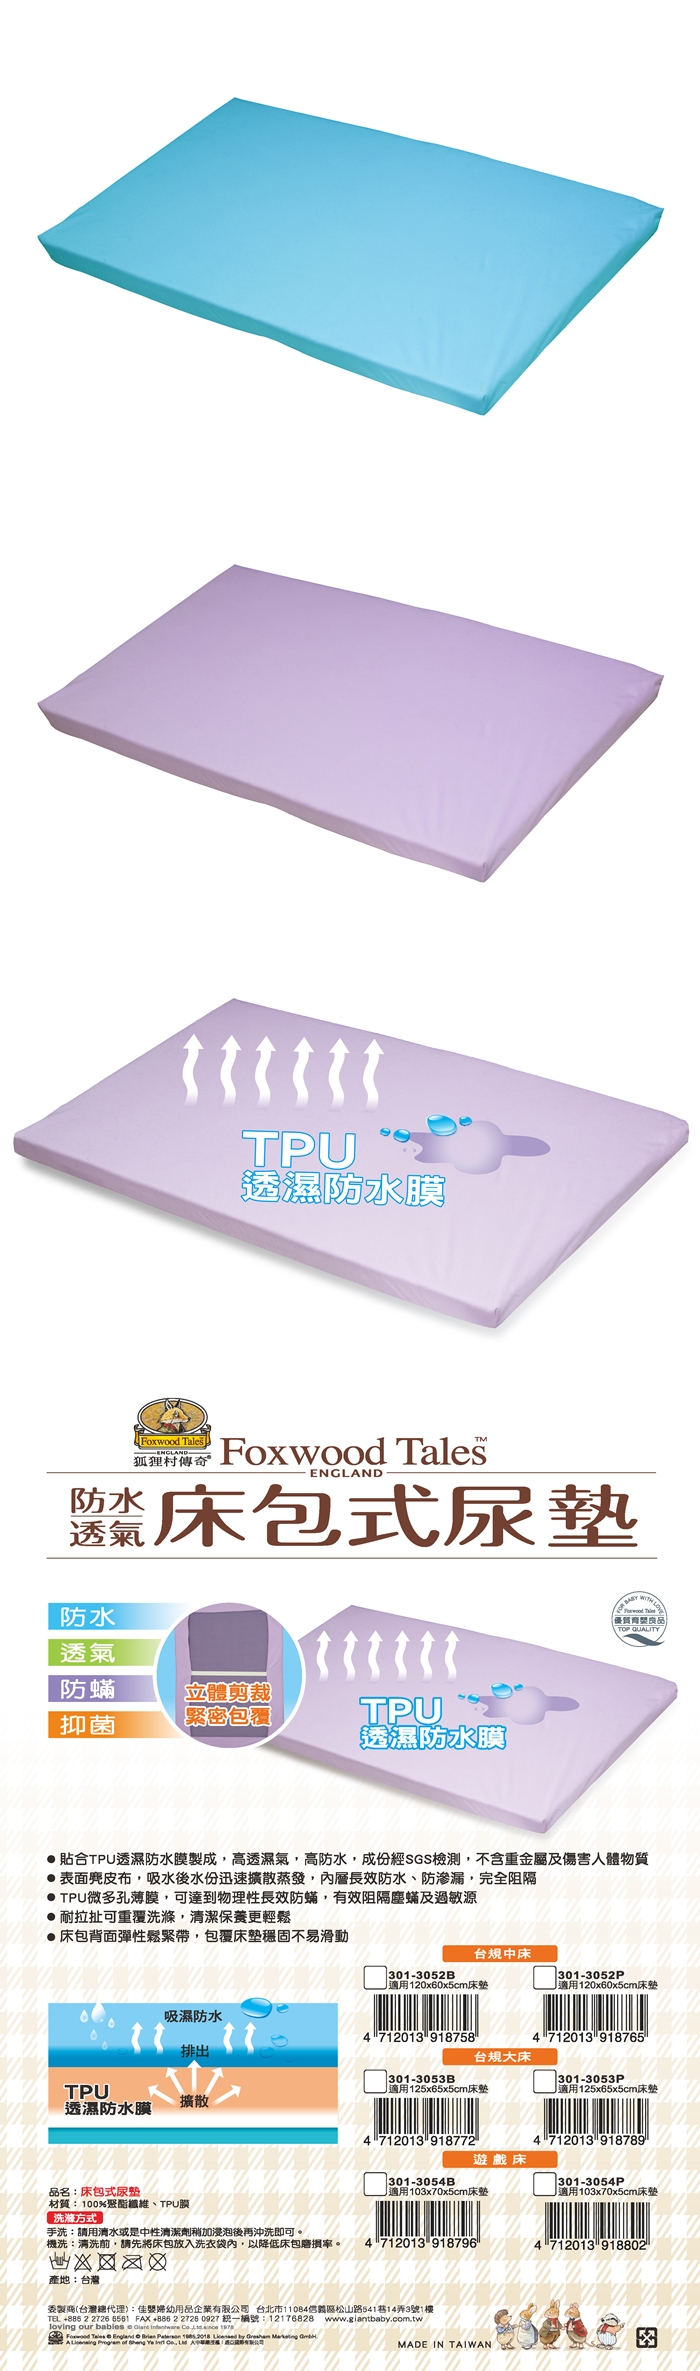 狐狸村傳奇-床包式尿墊-台規中床(藍色/紫色)301-3052